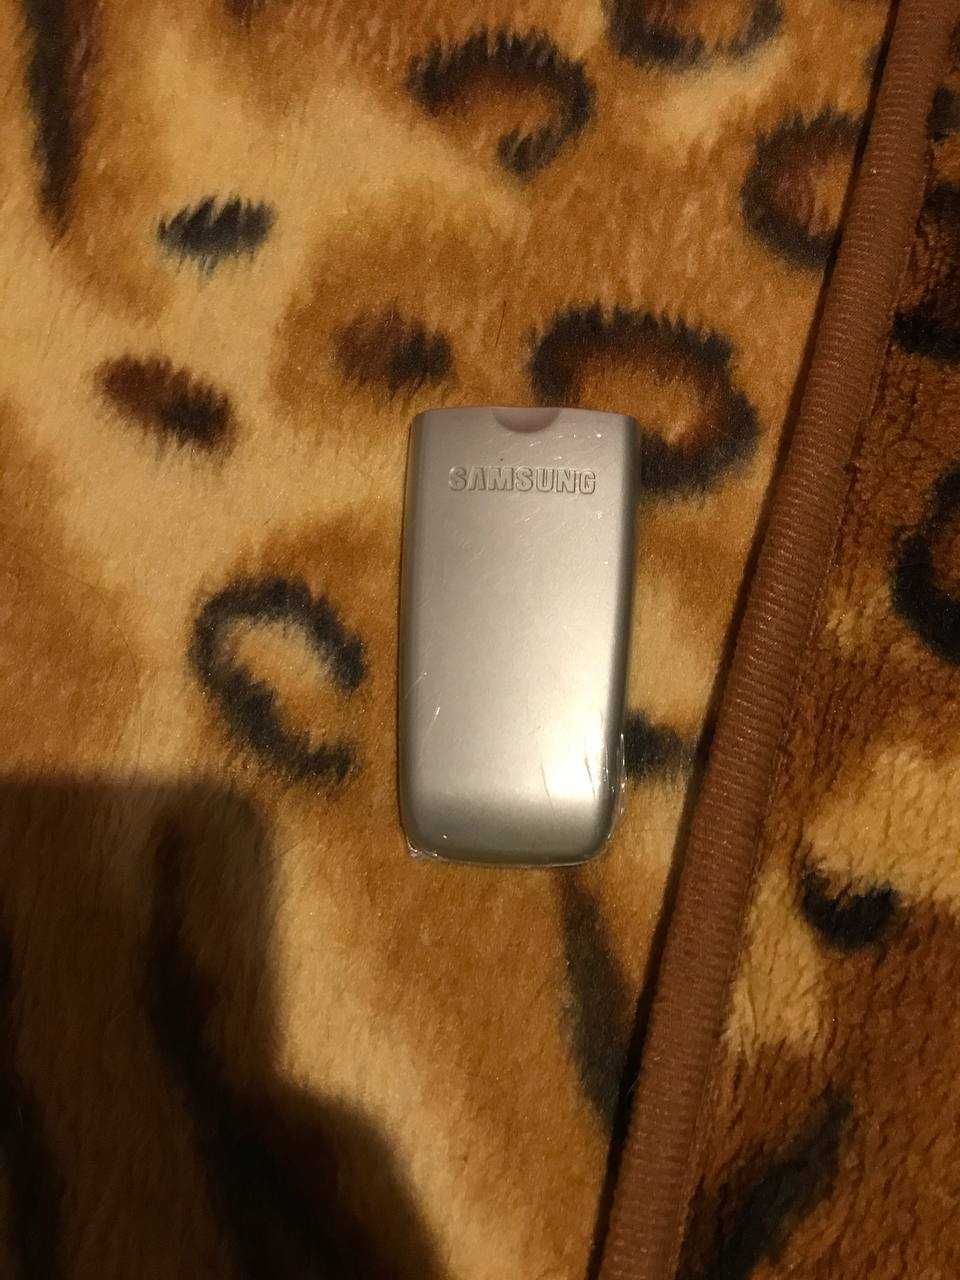 Аккумулятор Samsung LG